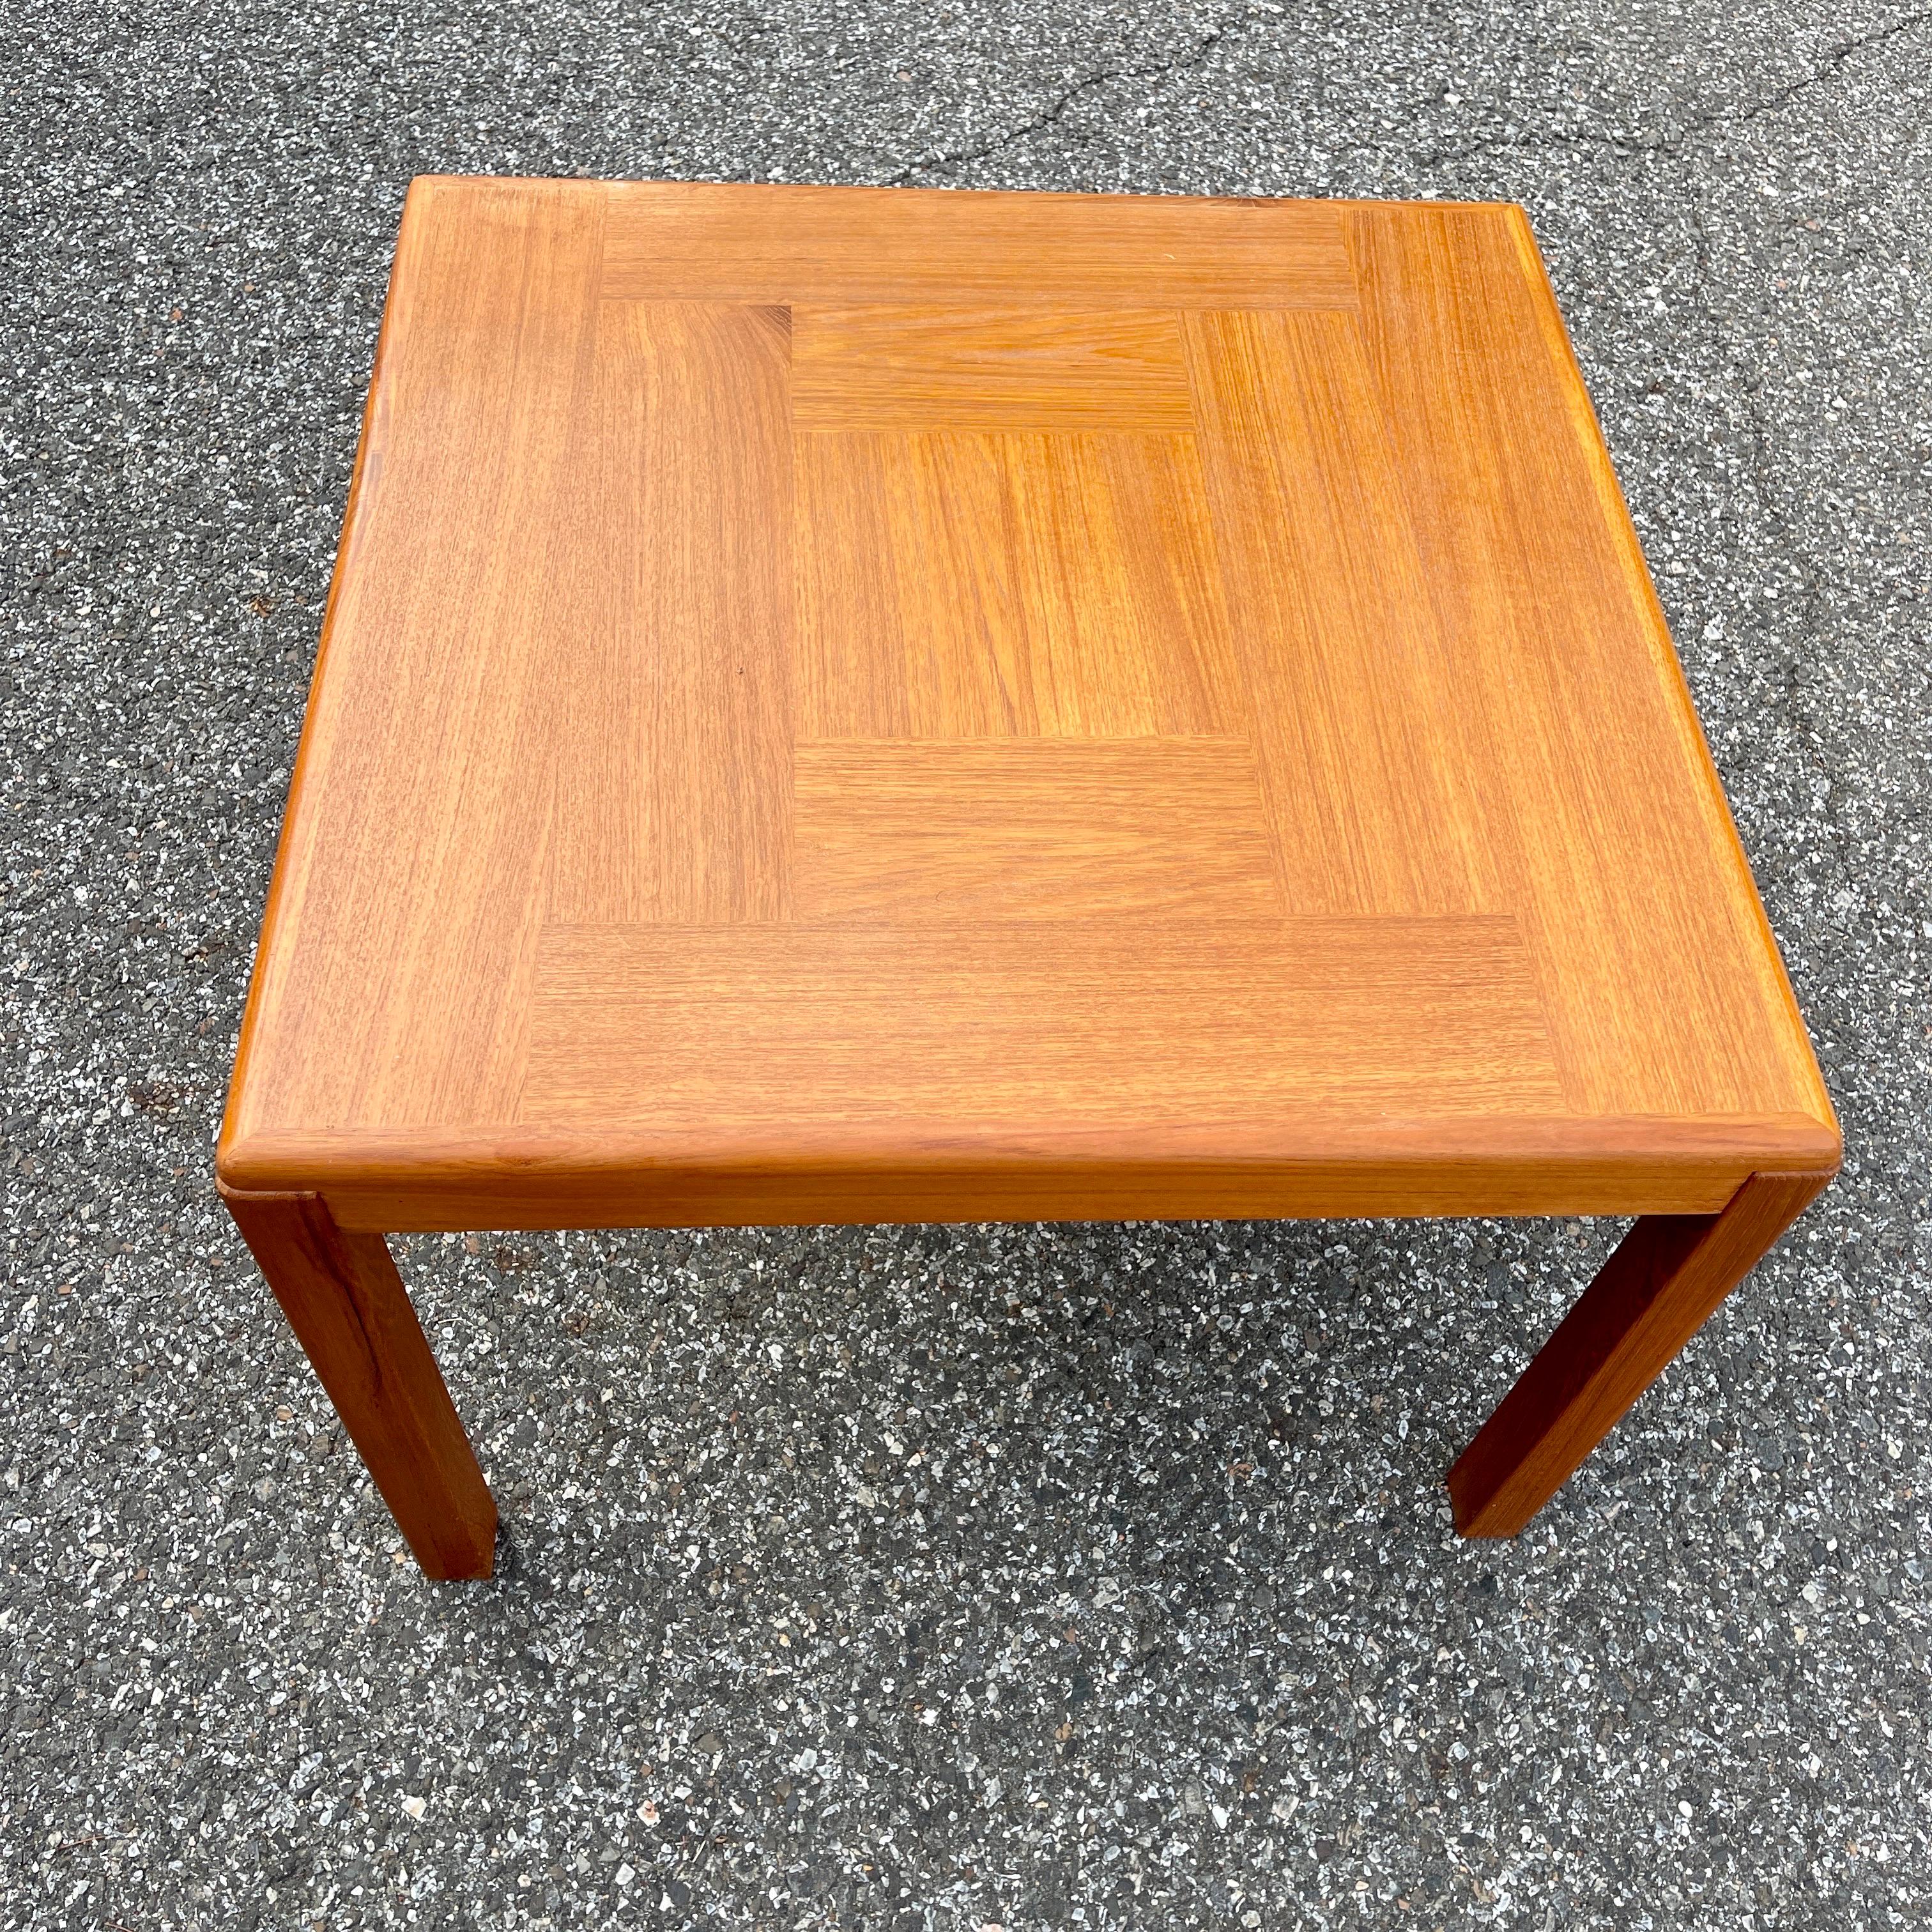 Danish Mid-Century Modern Teak Side Table by Vejle Stole og Mobelfabrik For Sale 2